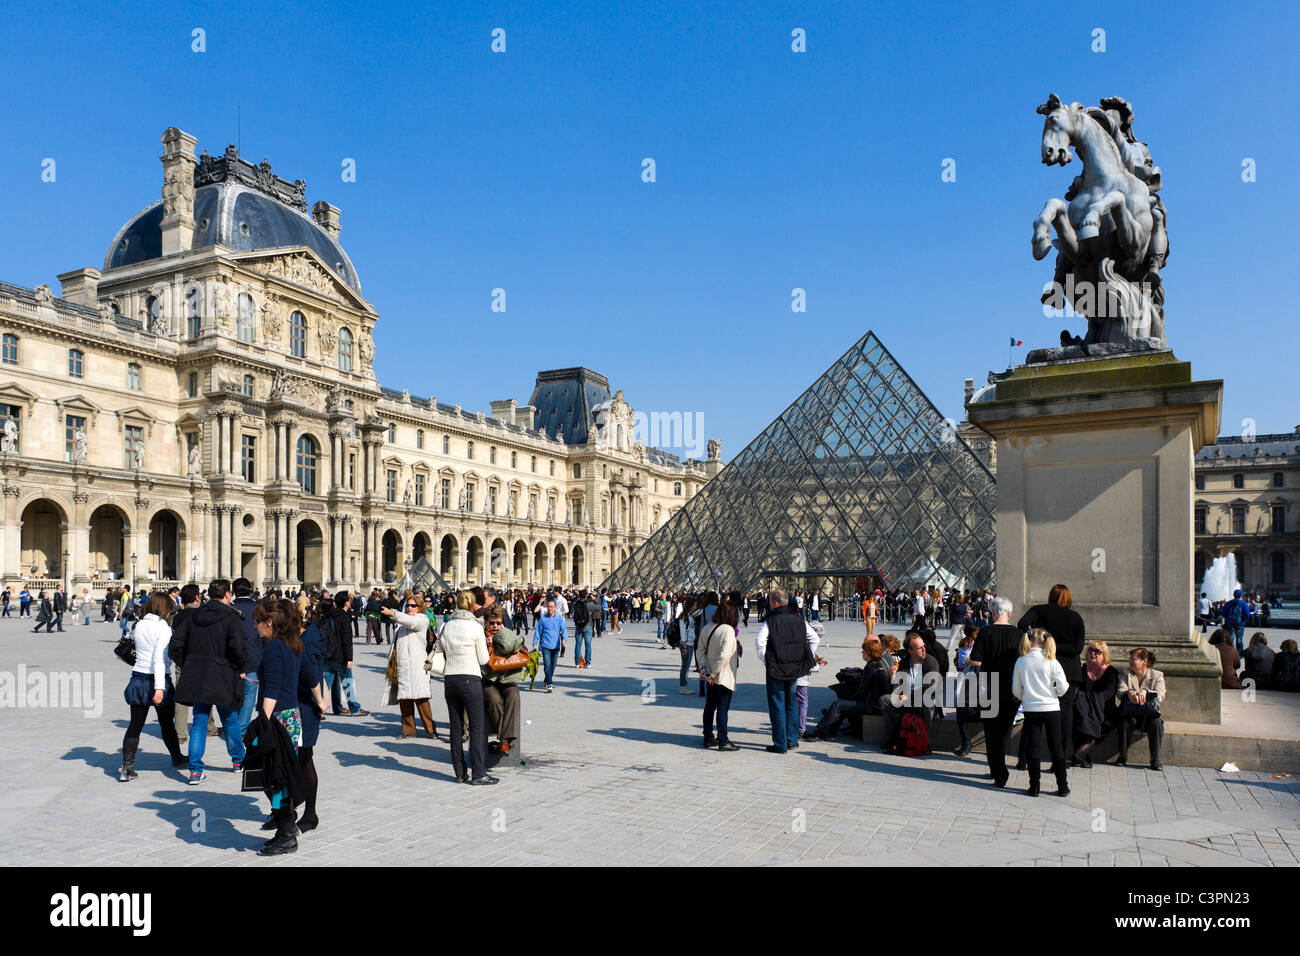 Musee du Louvre, Paris, France Stock Photo